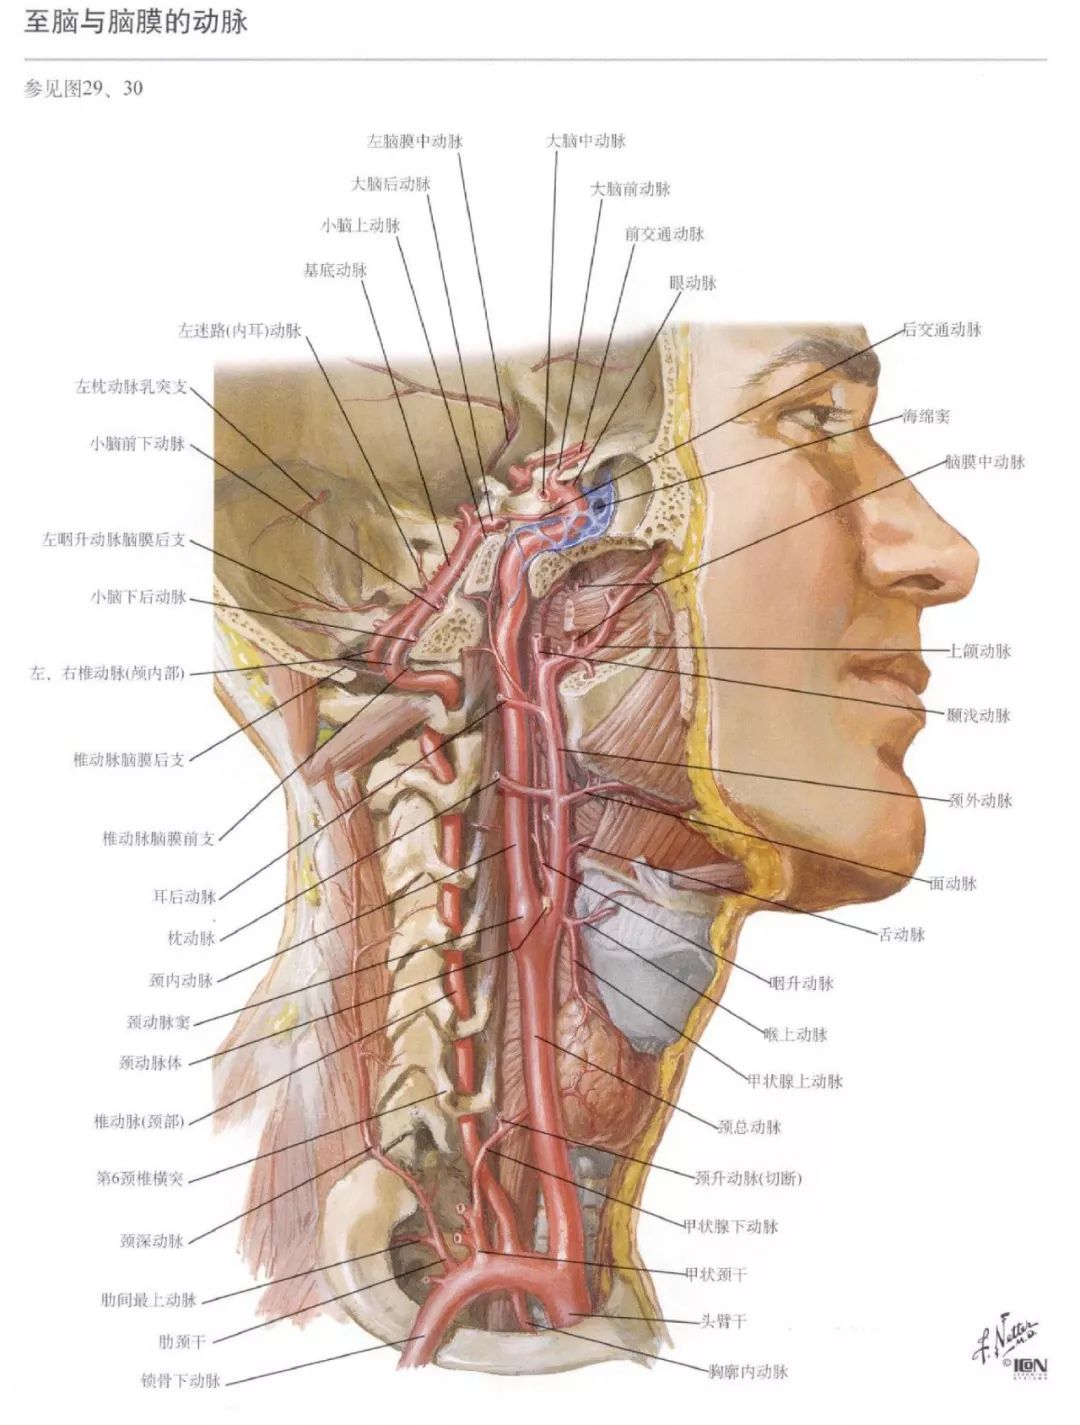 神经解剖脑部高清图谱奈特解剖学习资料